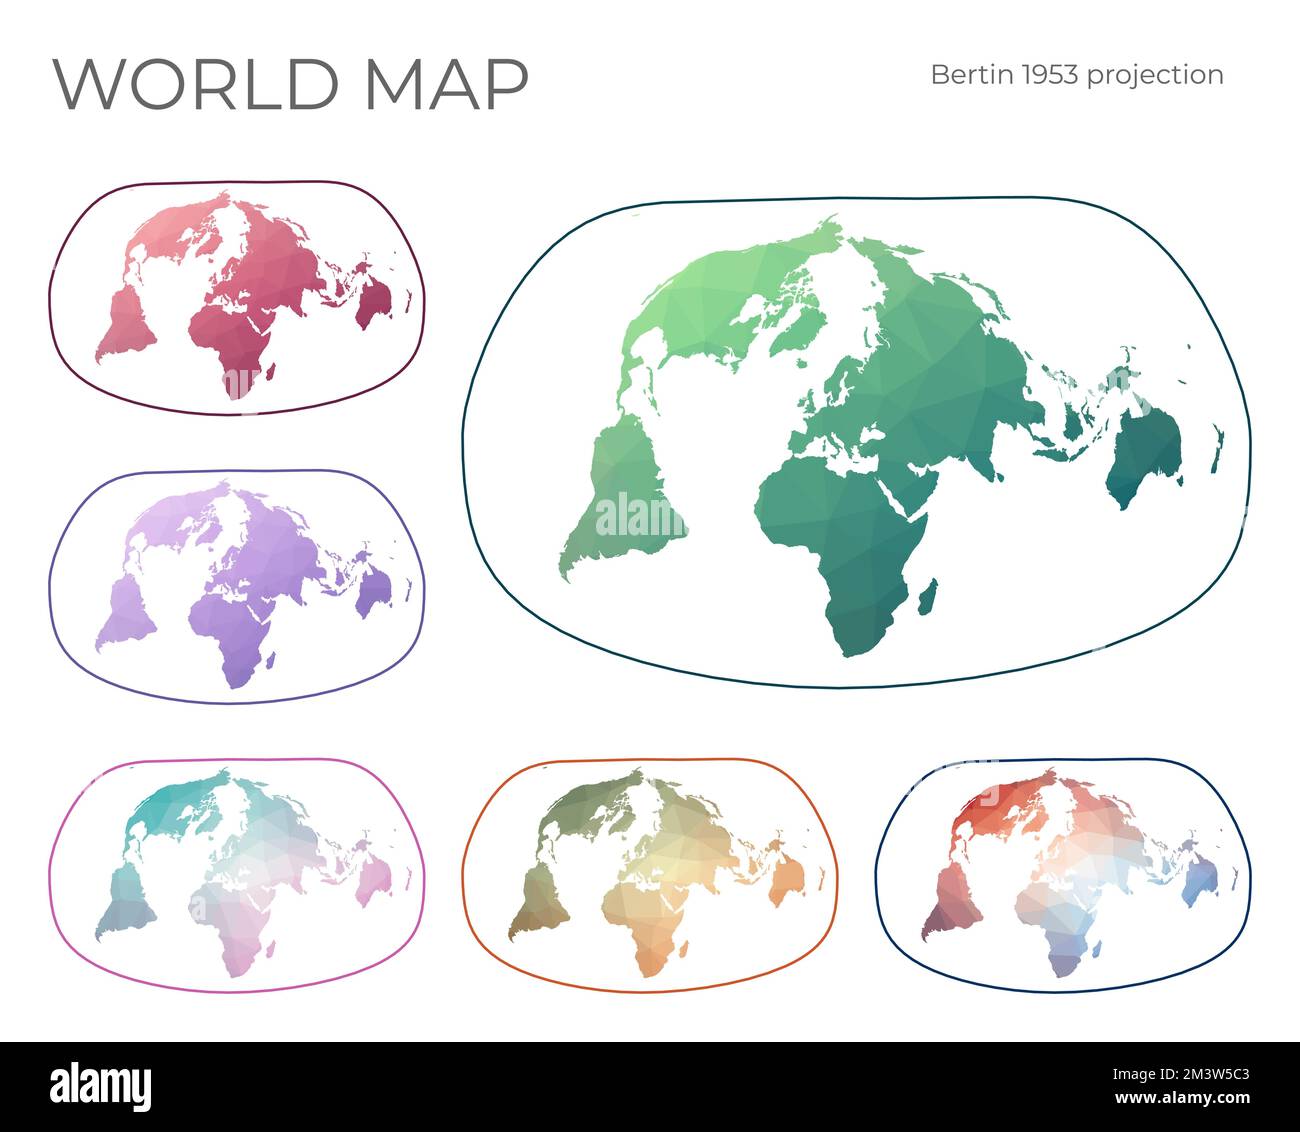 Niedrige Poly-Welt-Karte Eingestellt. Jacques Bertins Projektion 1953. Sammlung der Weltkarten im geometrischen Stil. Vektordarstellung. Stock Vektor